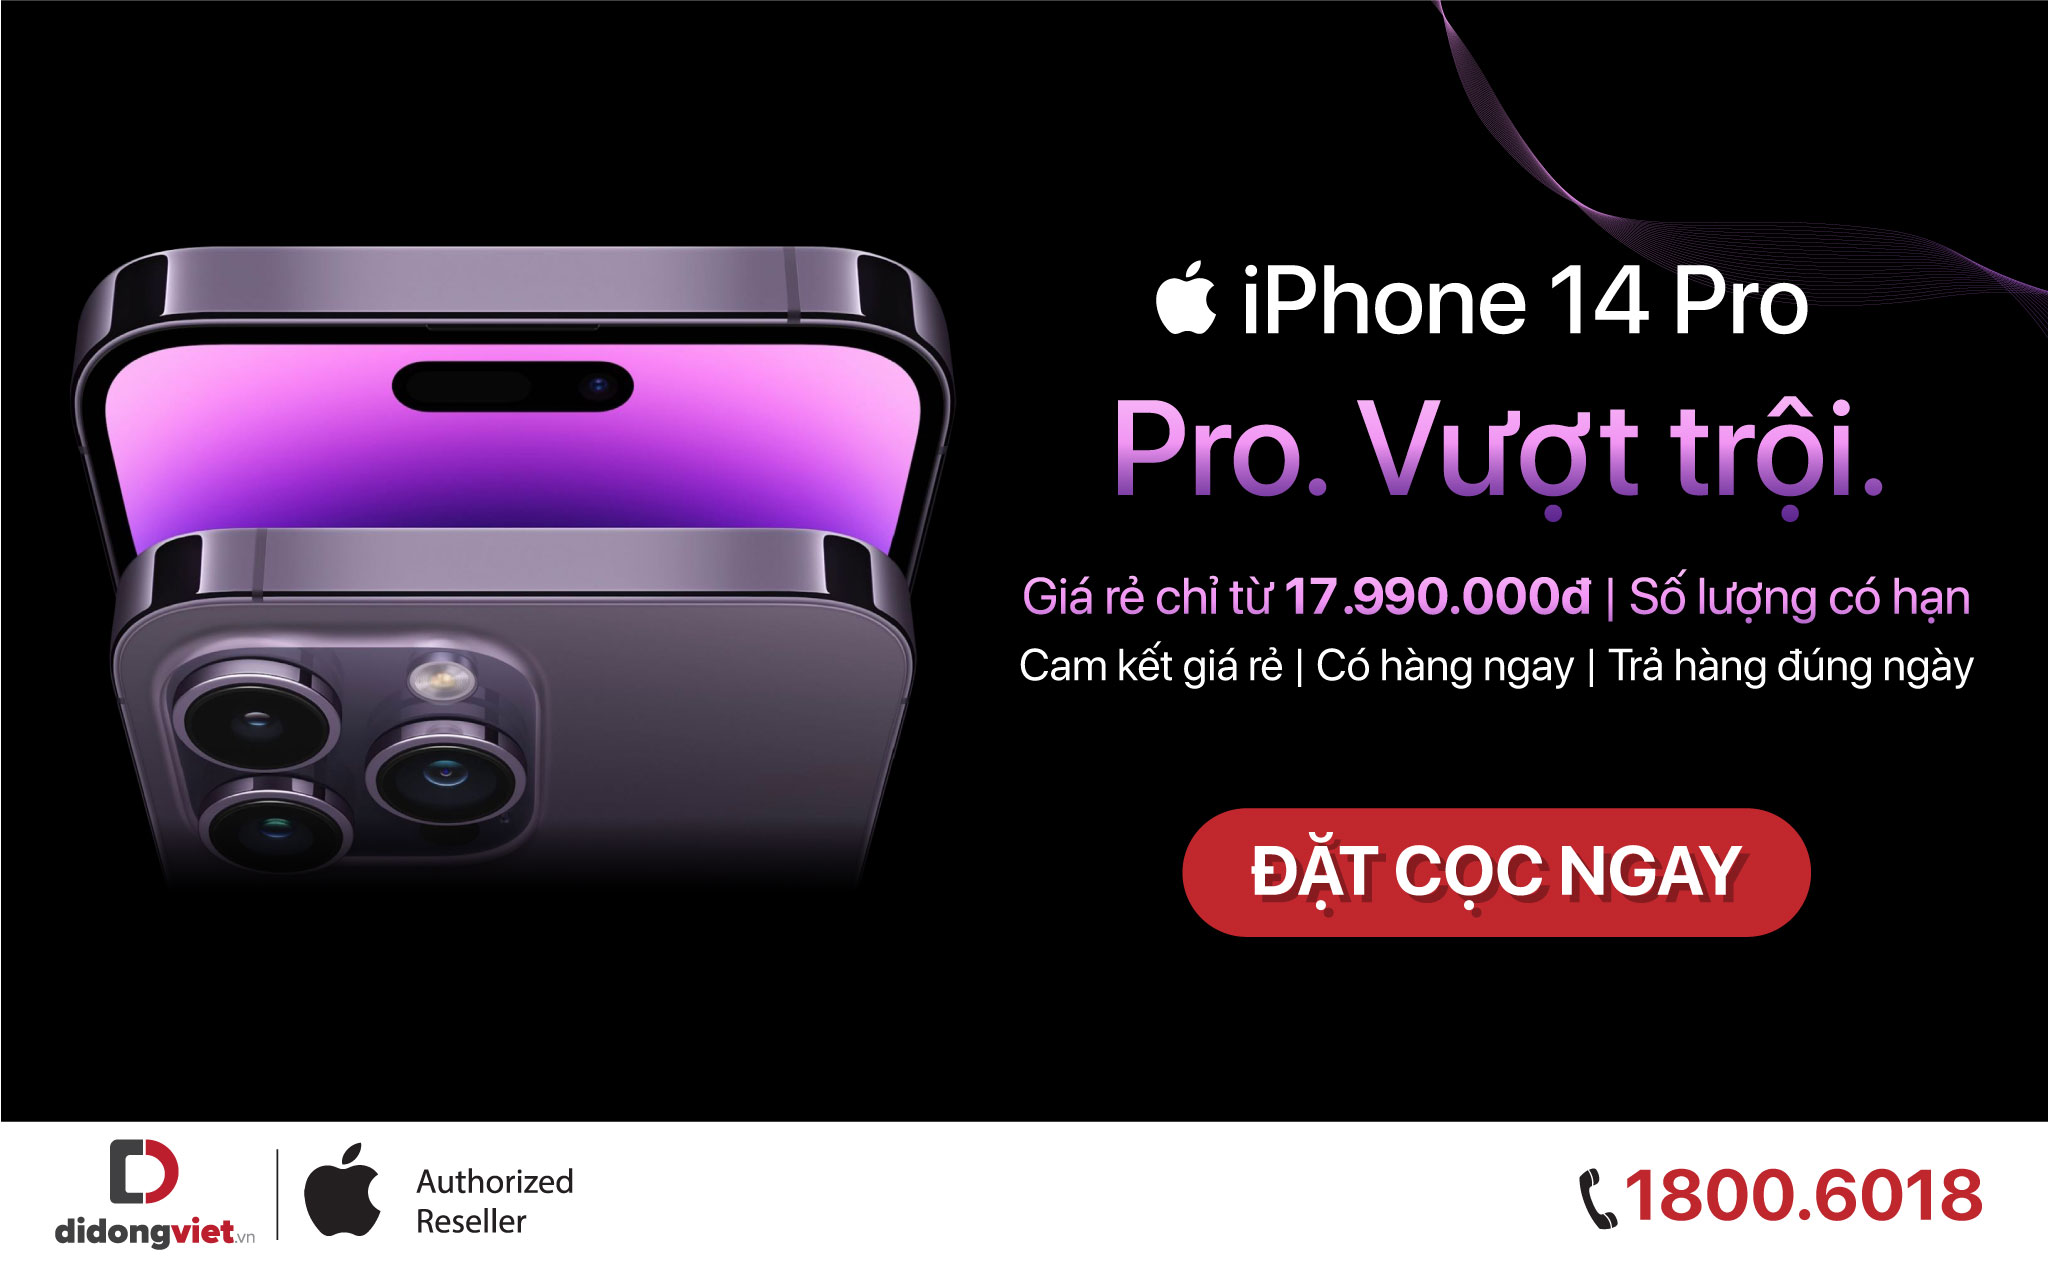 Di Động Việt nhận đặt cọc iPhone 14, ưu đãi lên đến 10 triệu đồng, với cam kết có hàng ngay và trả đúng ngày